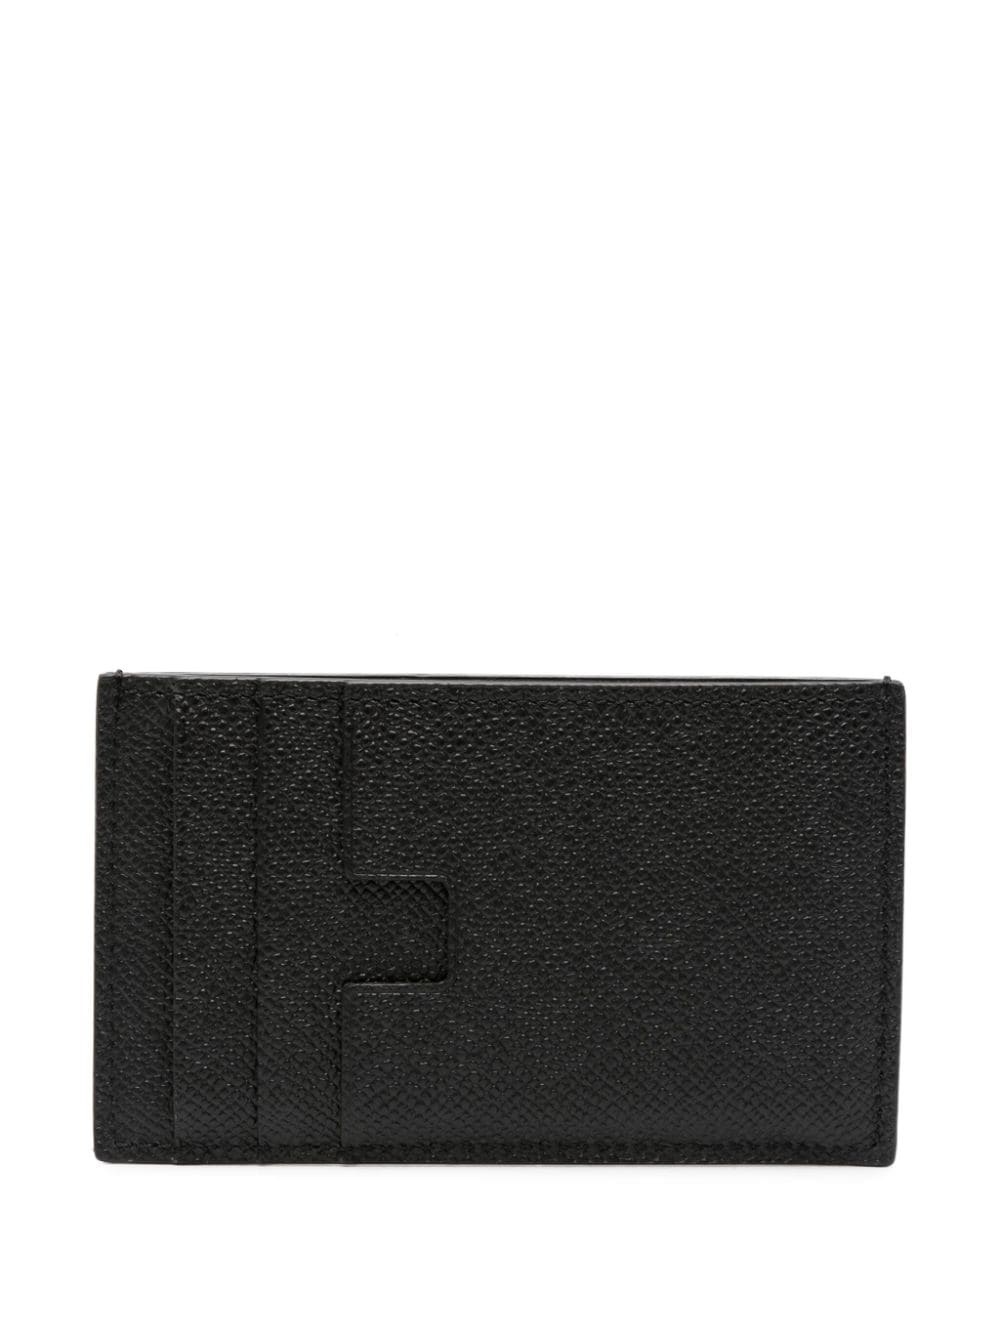 logo-stamp leather cardholder - 2